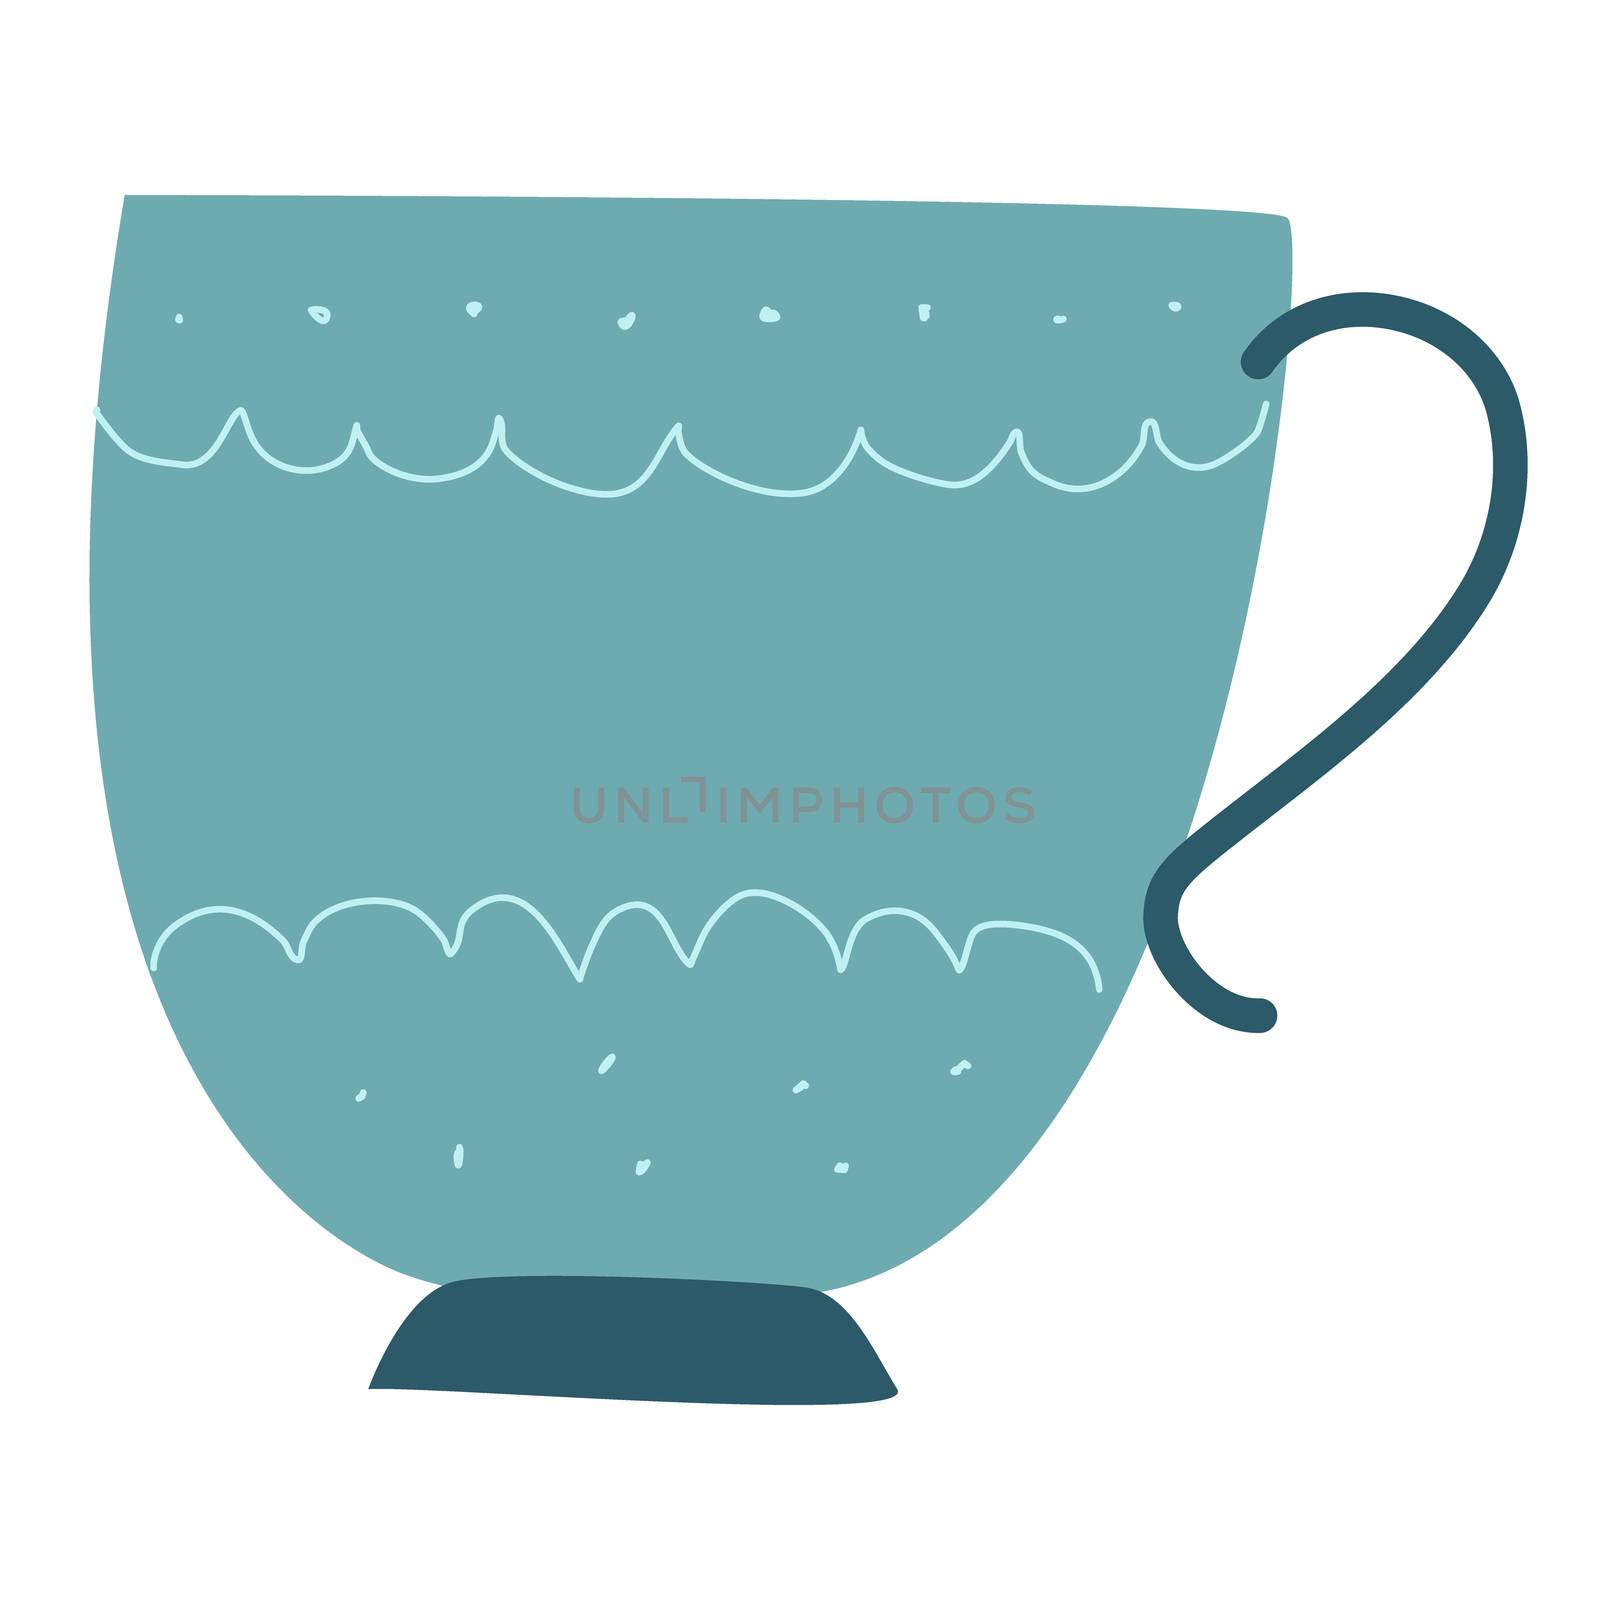 Retro light blue tea cup with white decor. by Nata_Prando